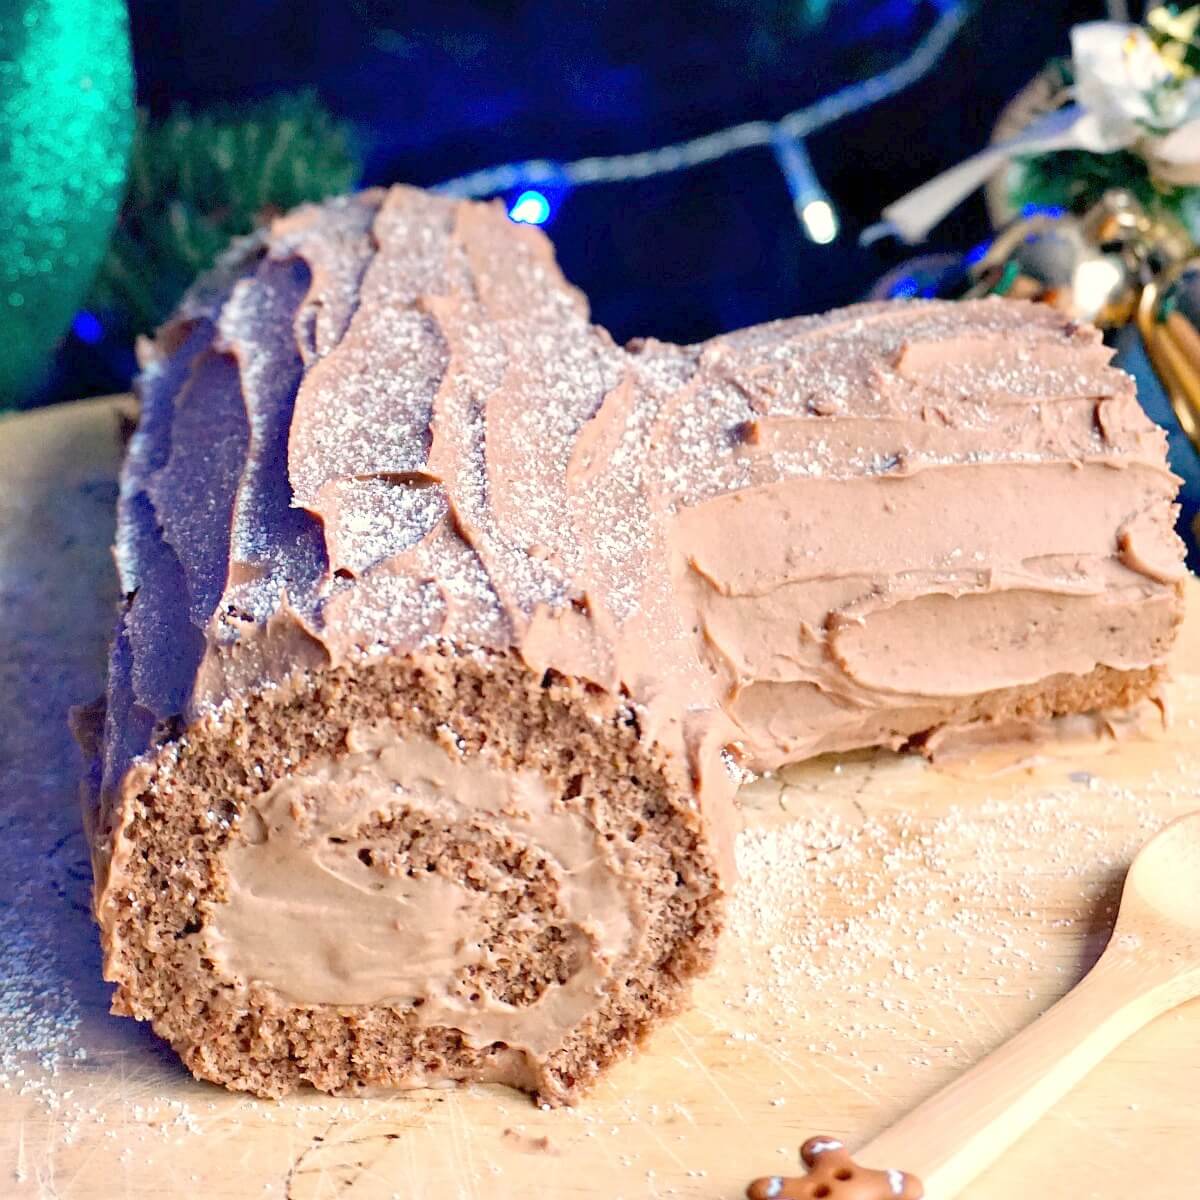 https://www.mygorgeousrecipes.com/wp-content/uploads/2020/12/Christmas-Yule-Log-Cake-2.jpg